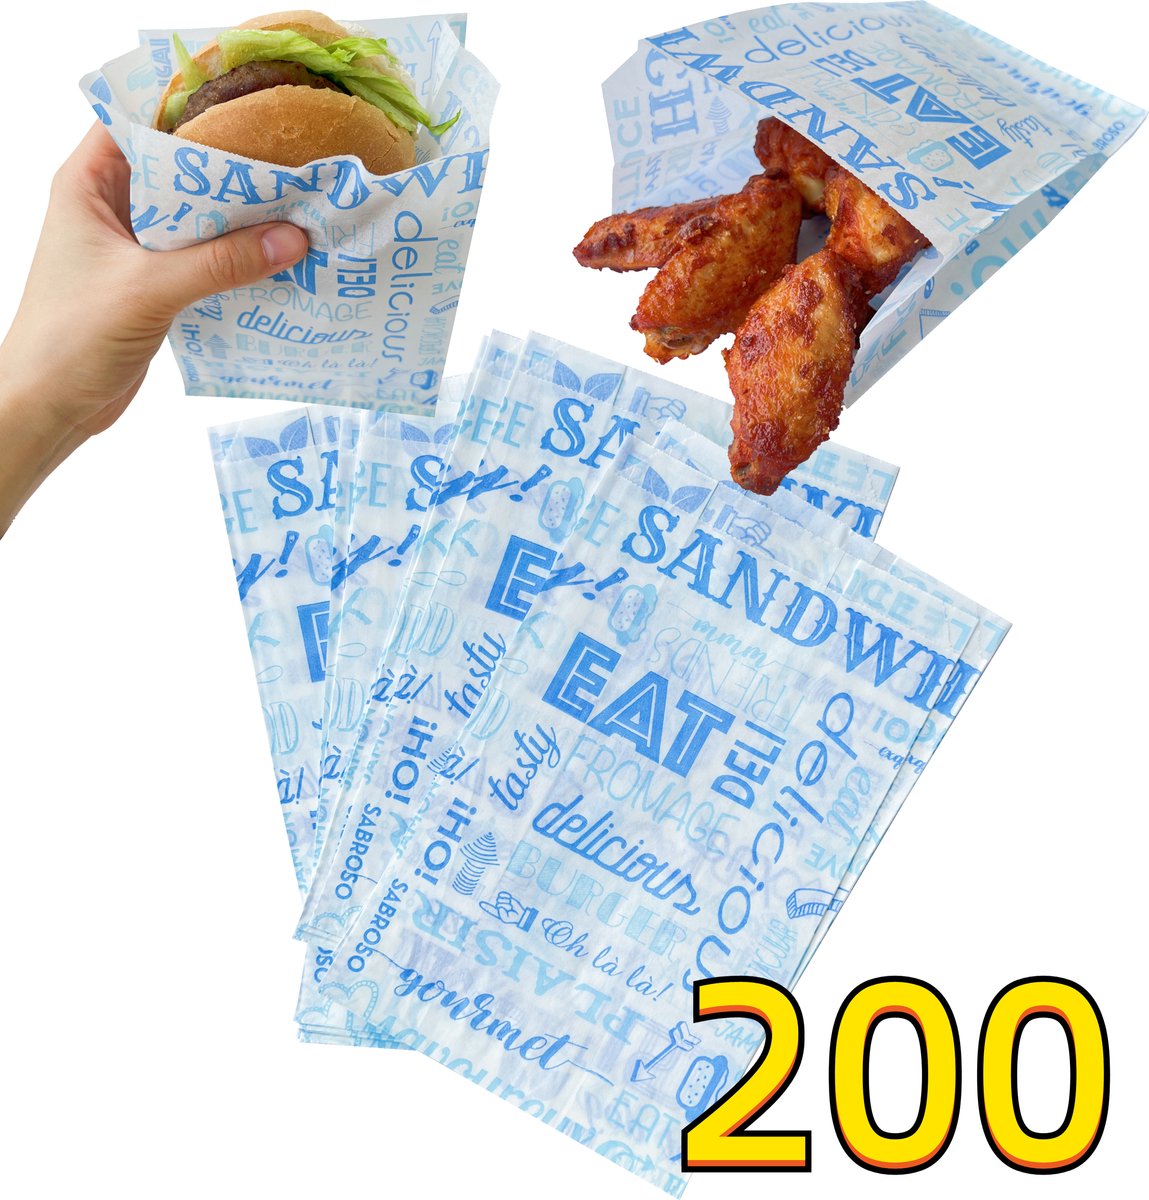 Rainbecom - 200 Stuks - Hamburger Zakje Papier - Vetvrij Papier - Papieren Zak voor Sandwiches - Blauw